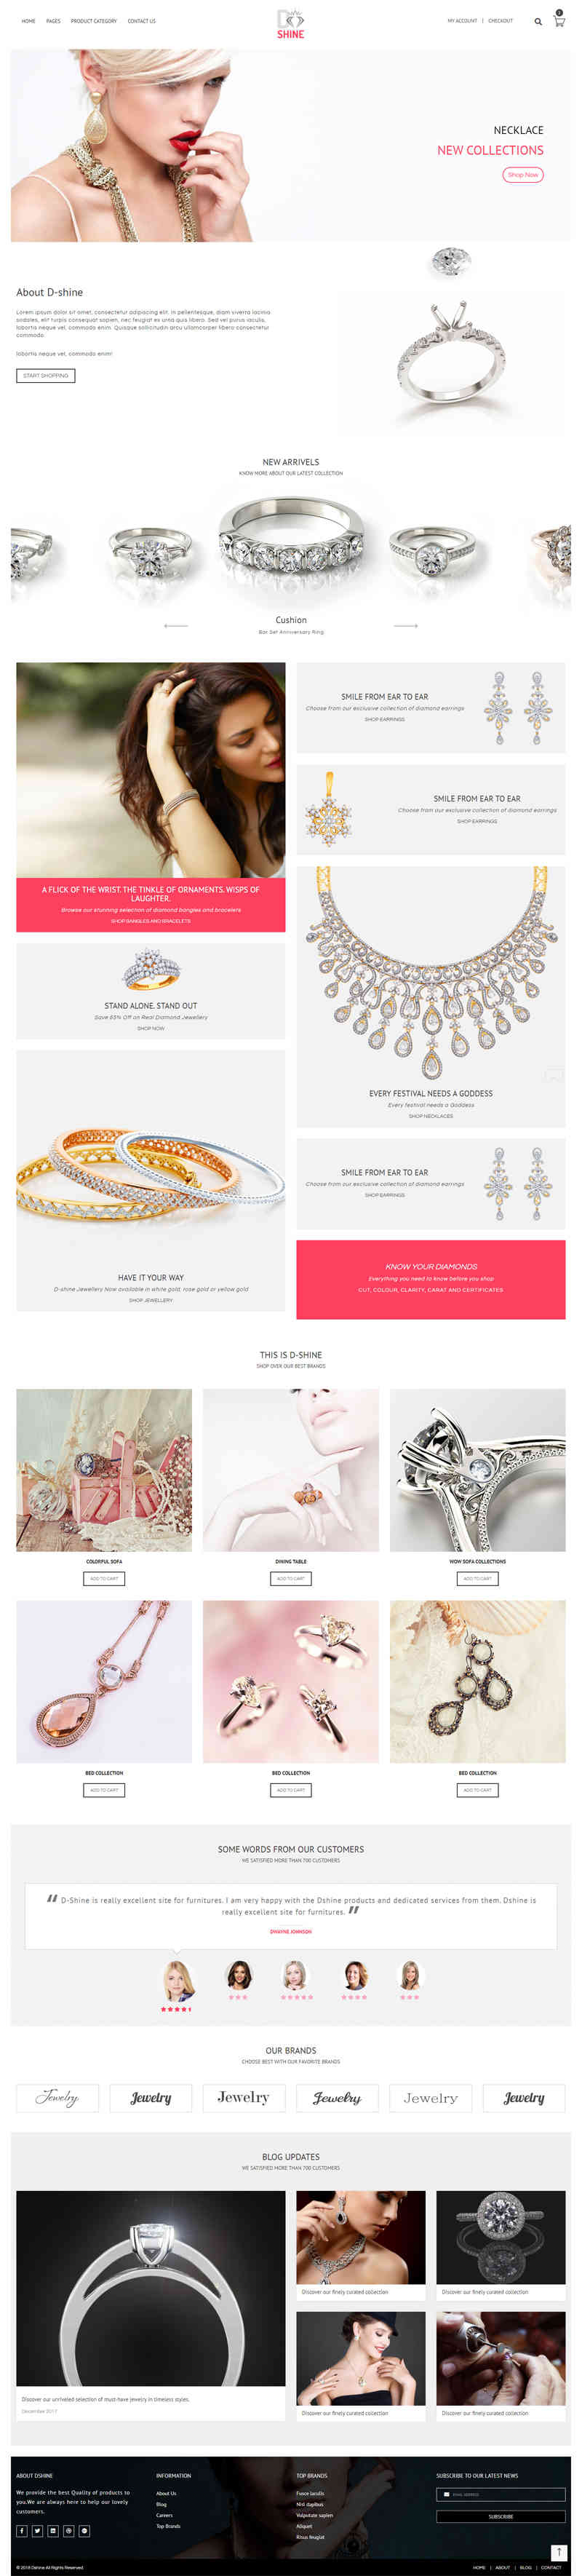 thiet ke website tmi jewelry 210029